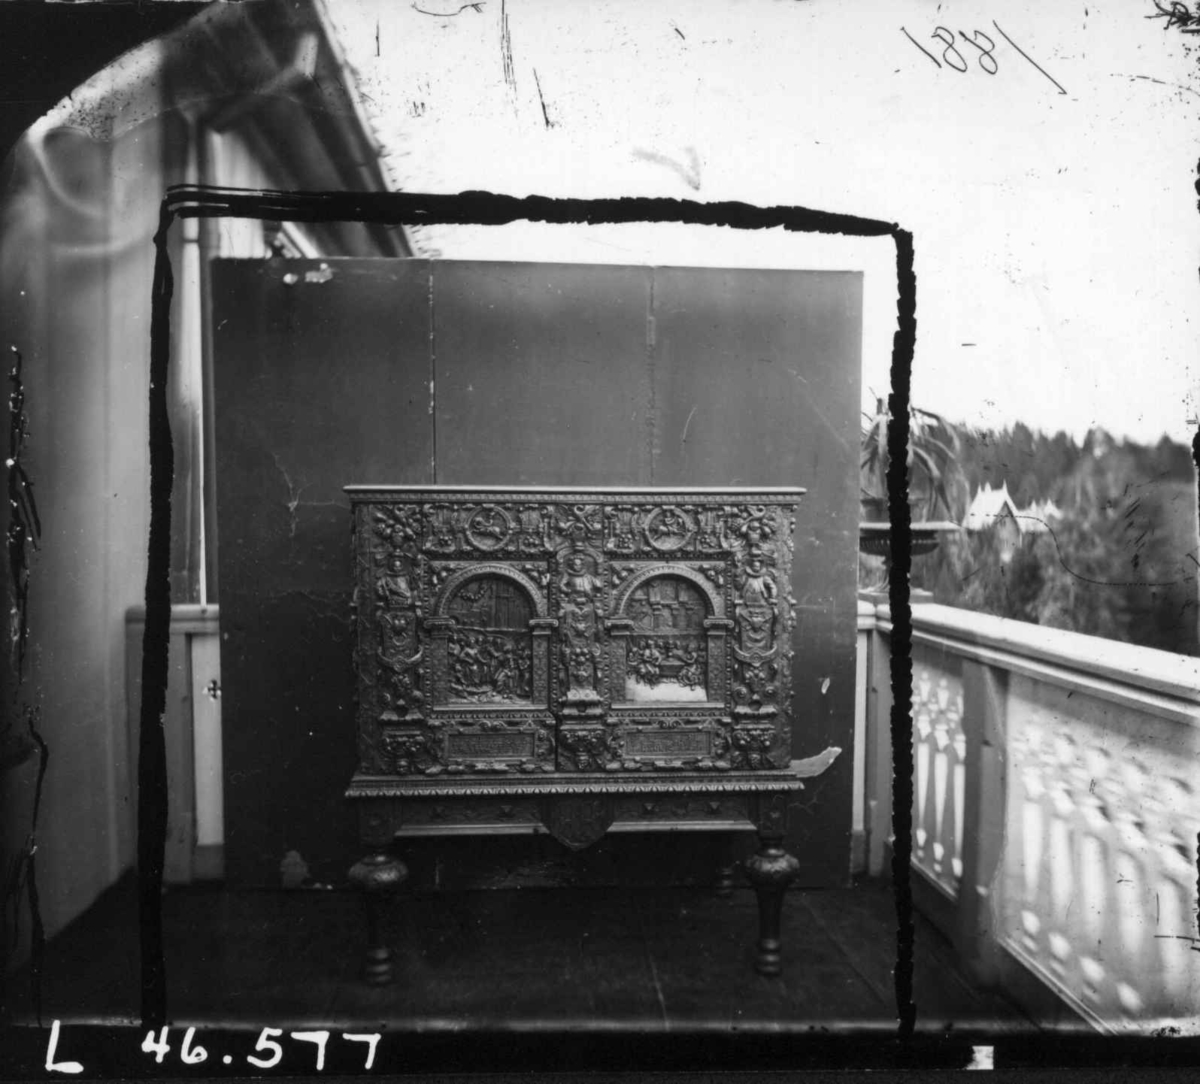 Skap(?), Dal gård, Ullensaker. Skap plassert på  veranda for fotografering, ant. 1881.
Fra serie fotografert av kammerherre Fredrik Emil Faye (1844-1903), gårdens eier.